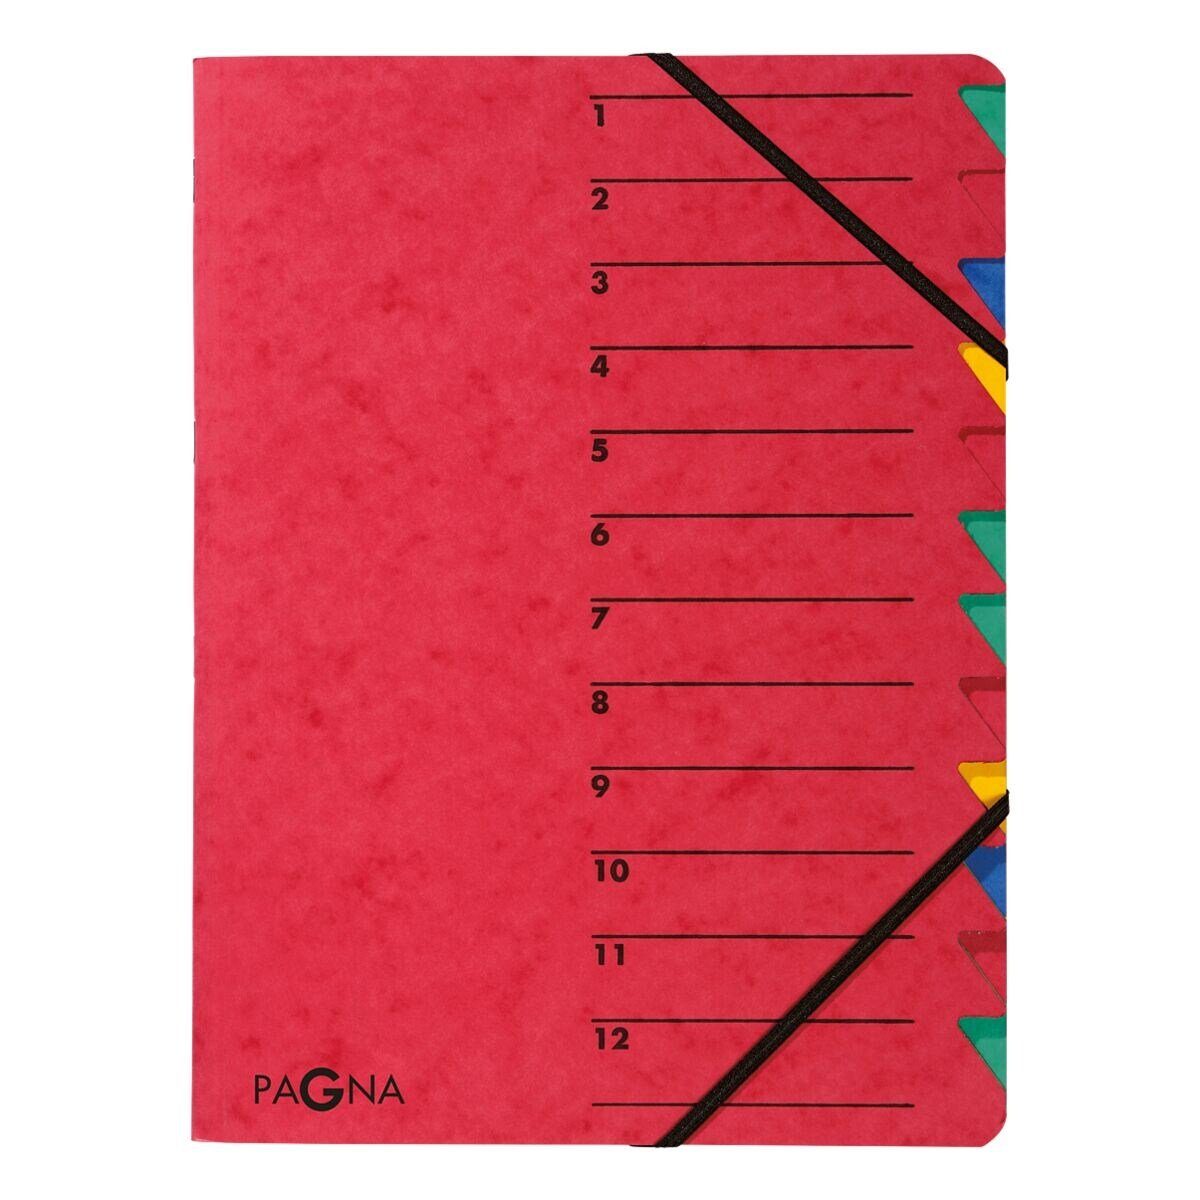 PAGNA Organisationsmappe Standard, Ordnungsmappe mit 12 Fächern, A4 rot